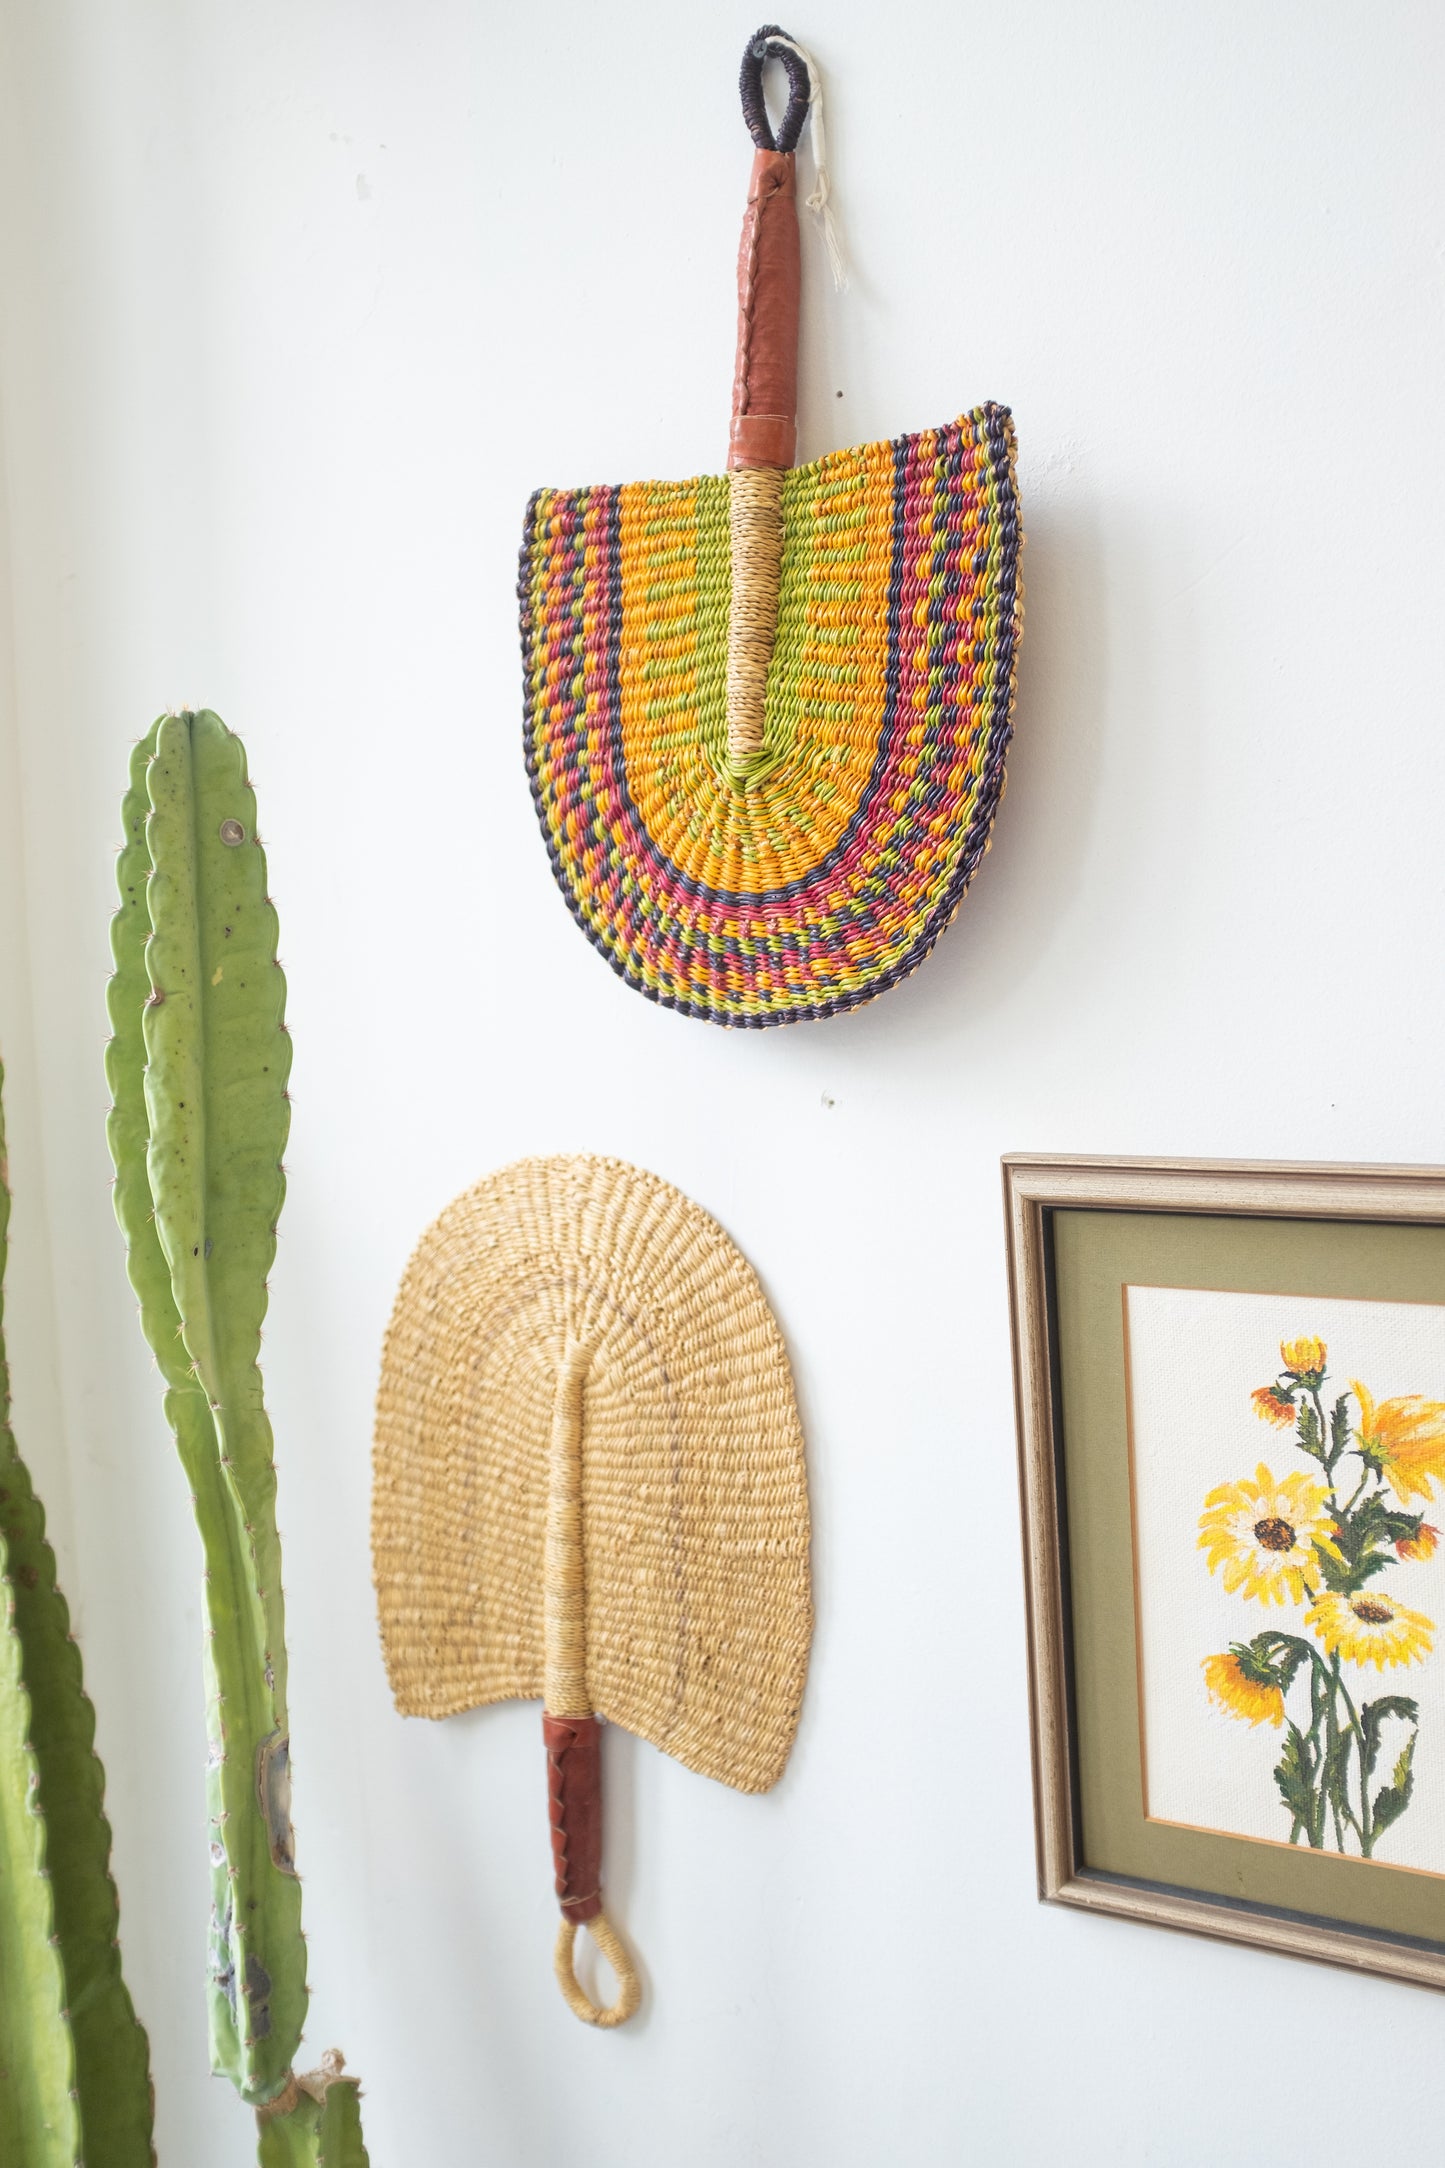 Benin Hand Fan & Wall Hanging